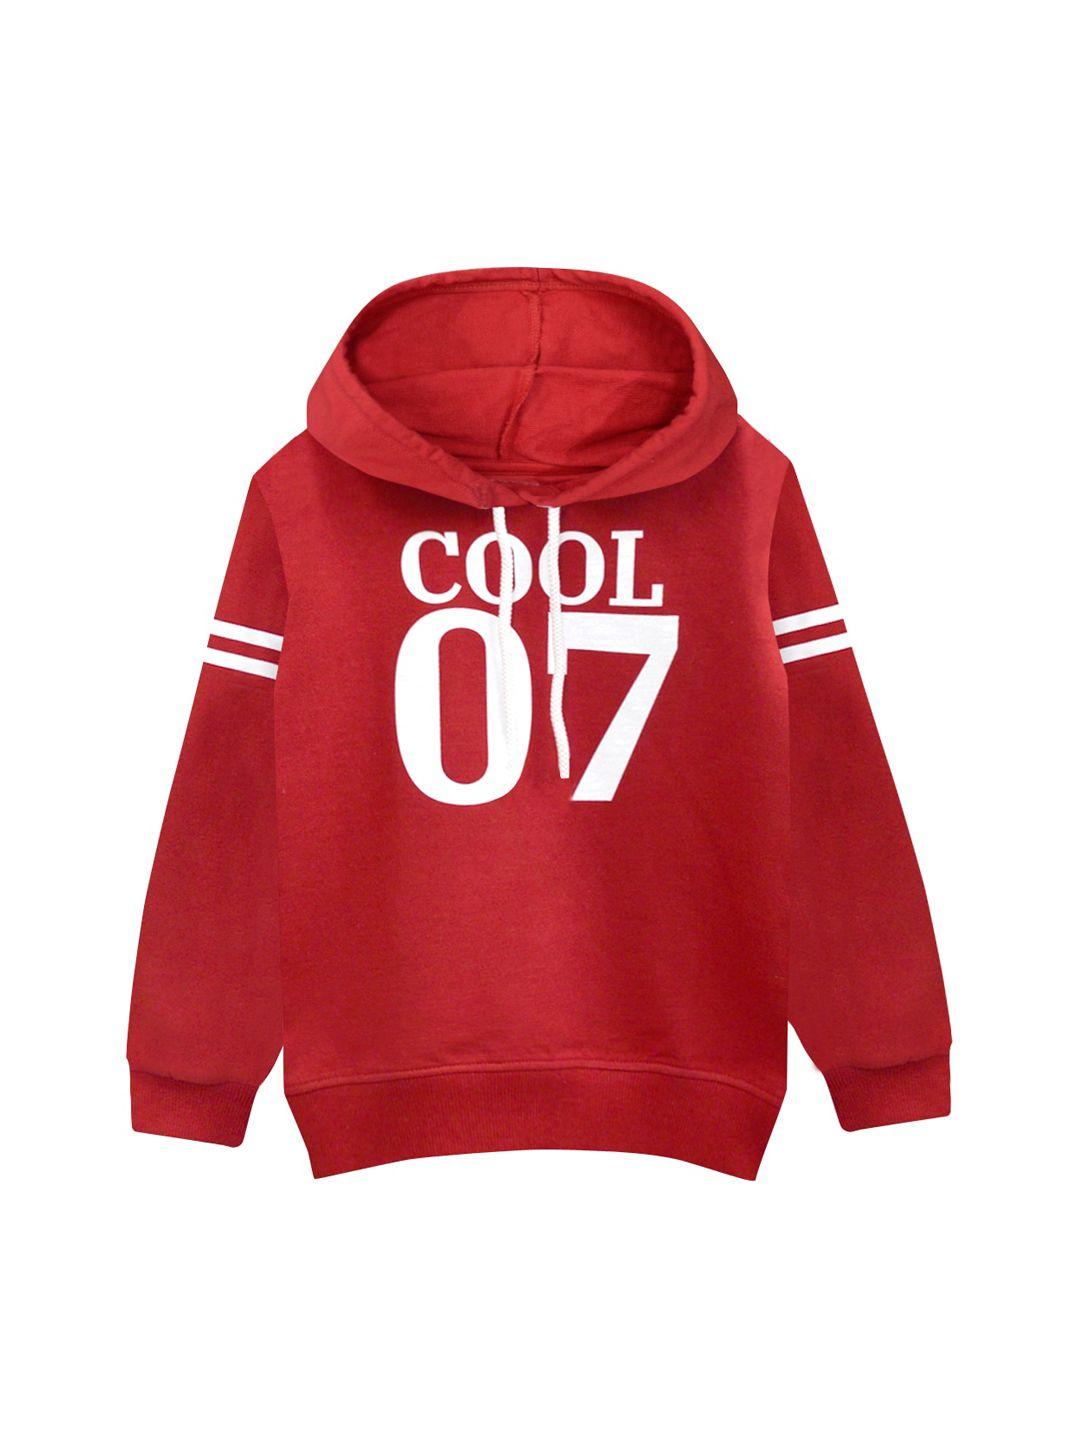 a t u n boys red printed hooded sweatshirt